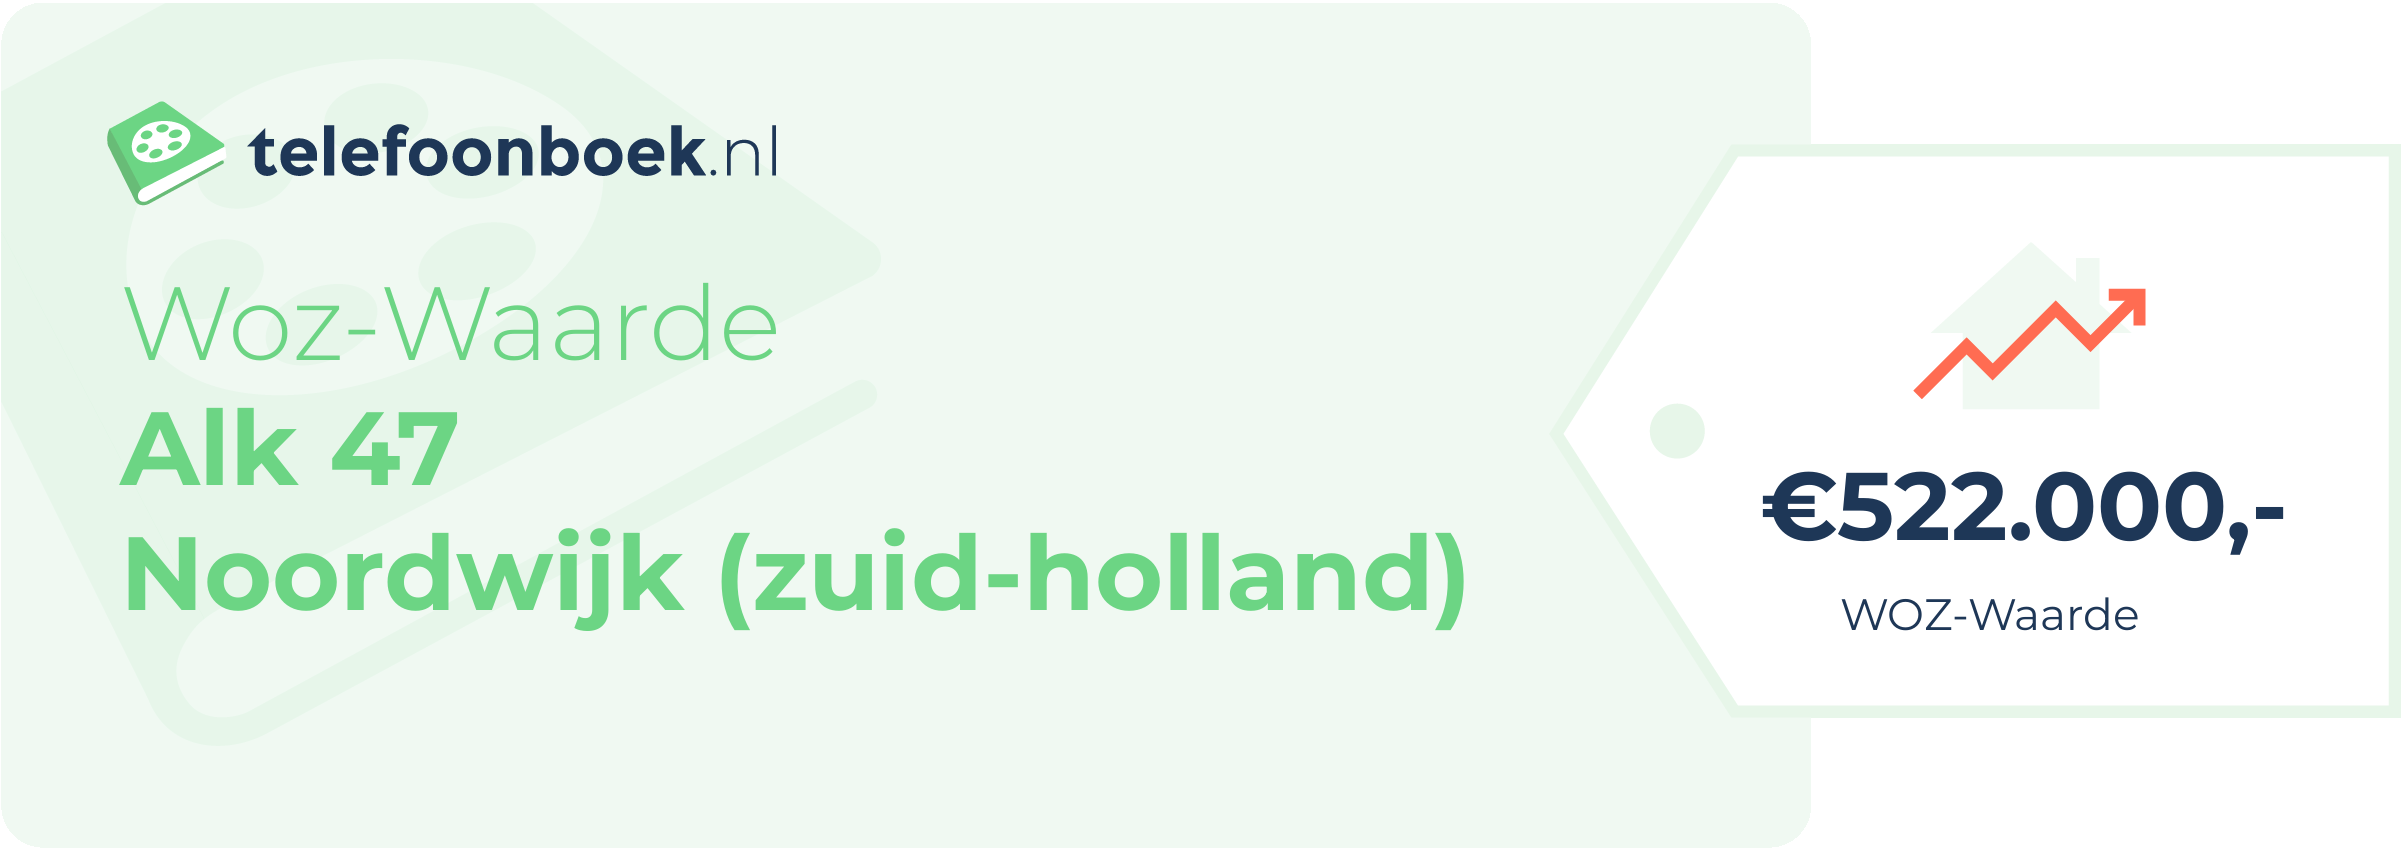 WOZ-waarde Alk 47 Noordwijk (Zuid-Holland)